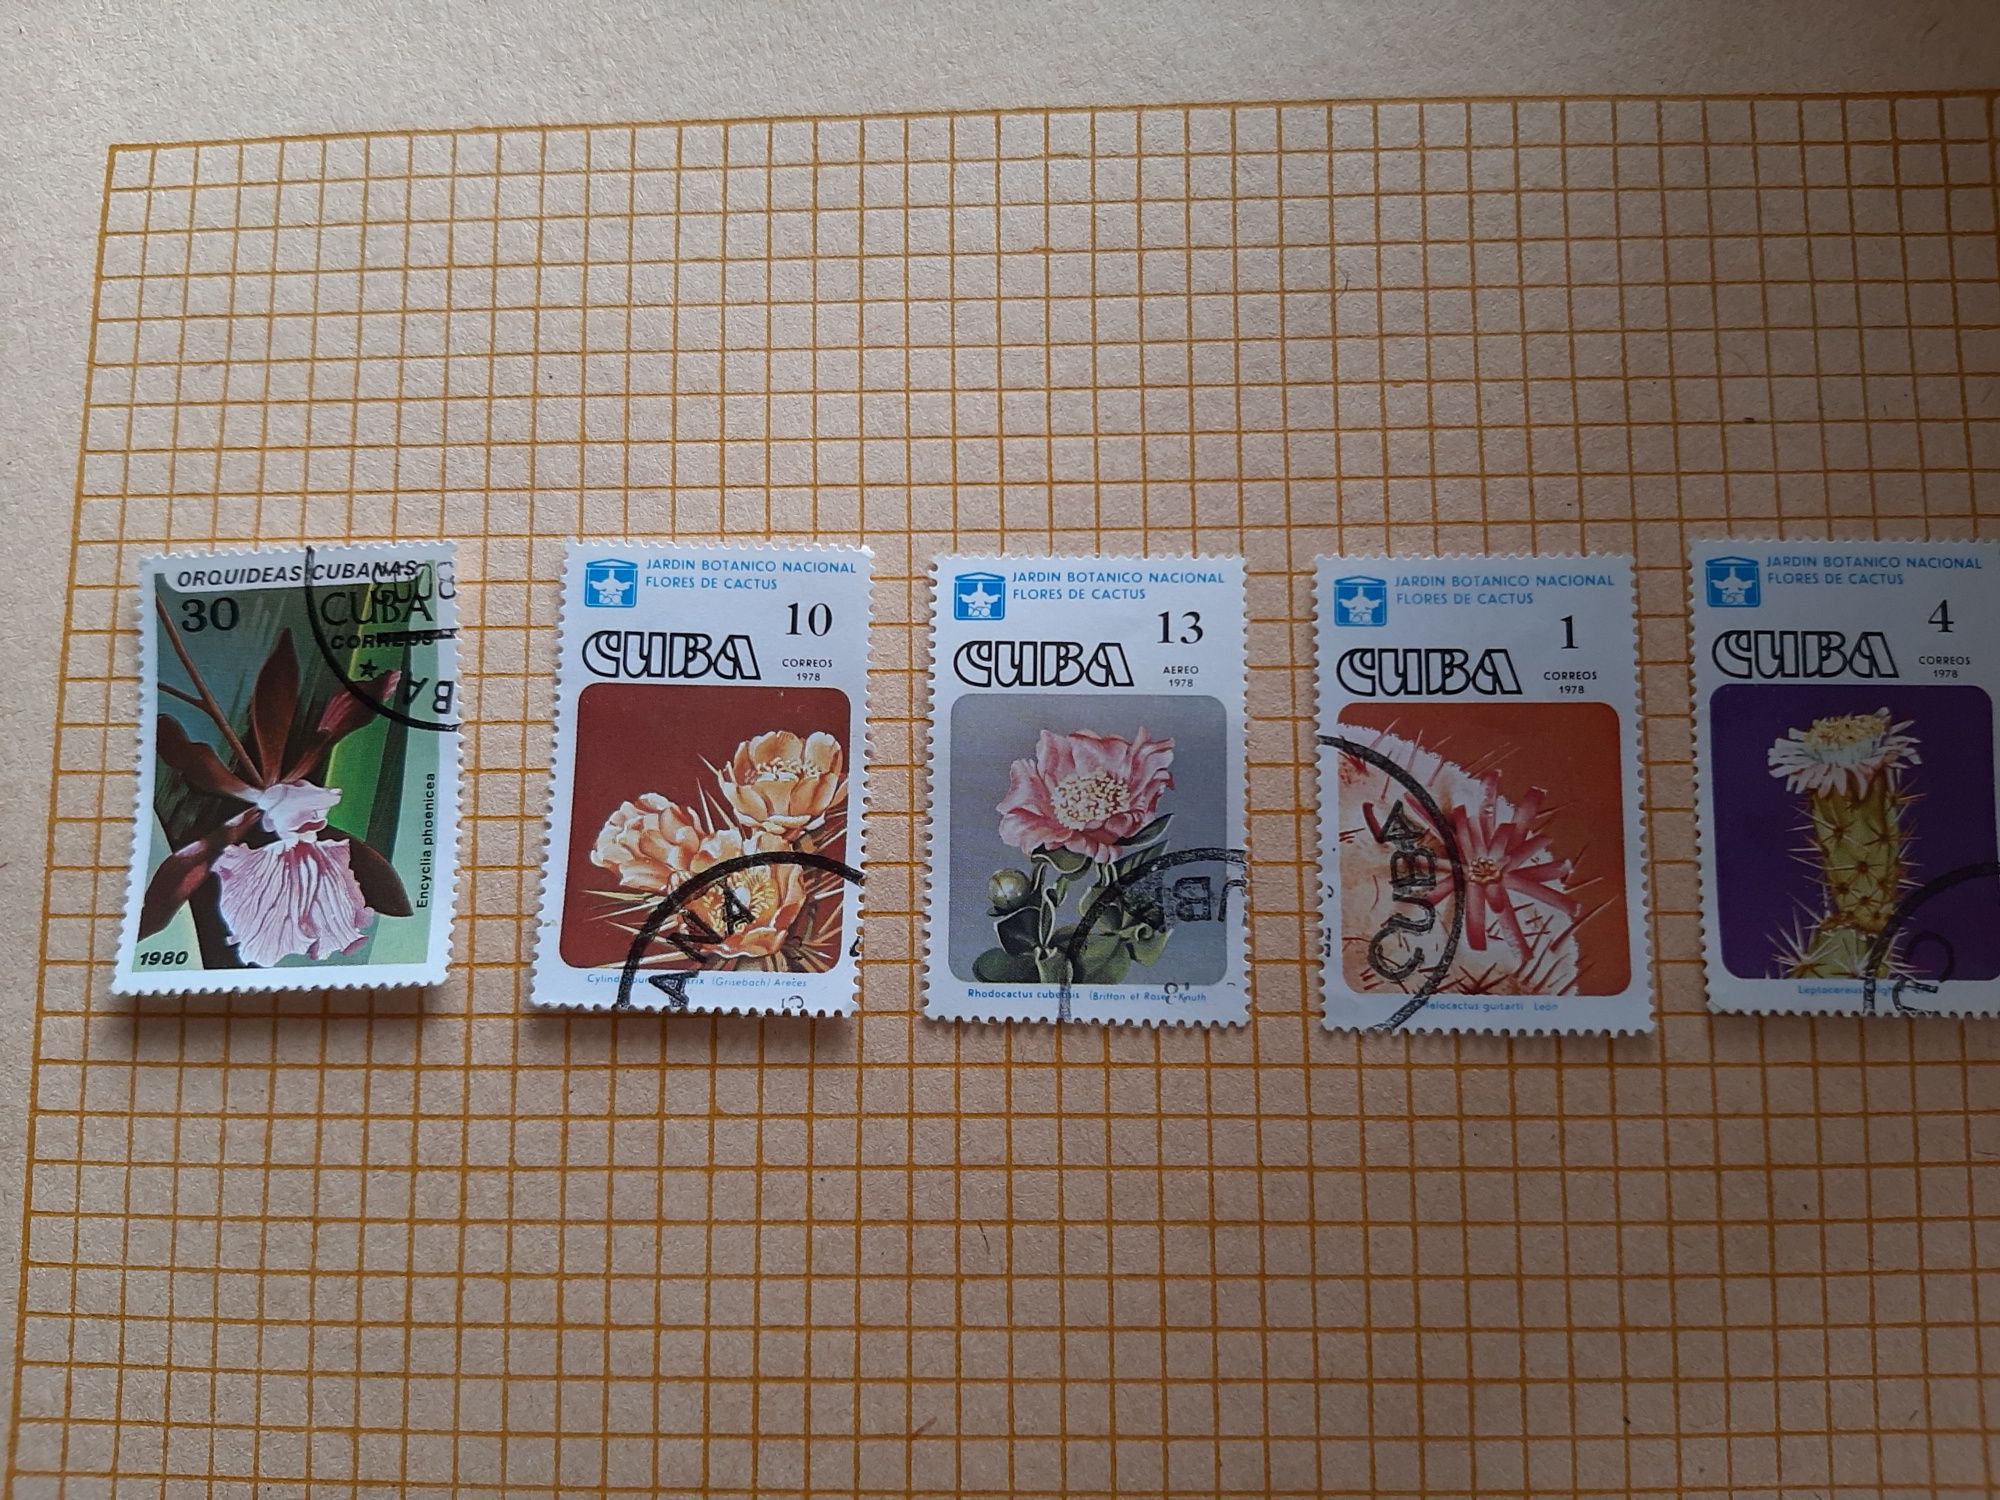 Продам марки кубинские из серии " Цветы кактусов". 5 марок в наличии